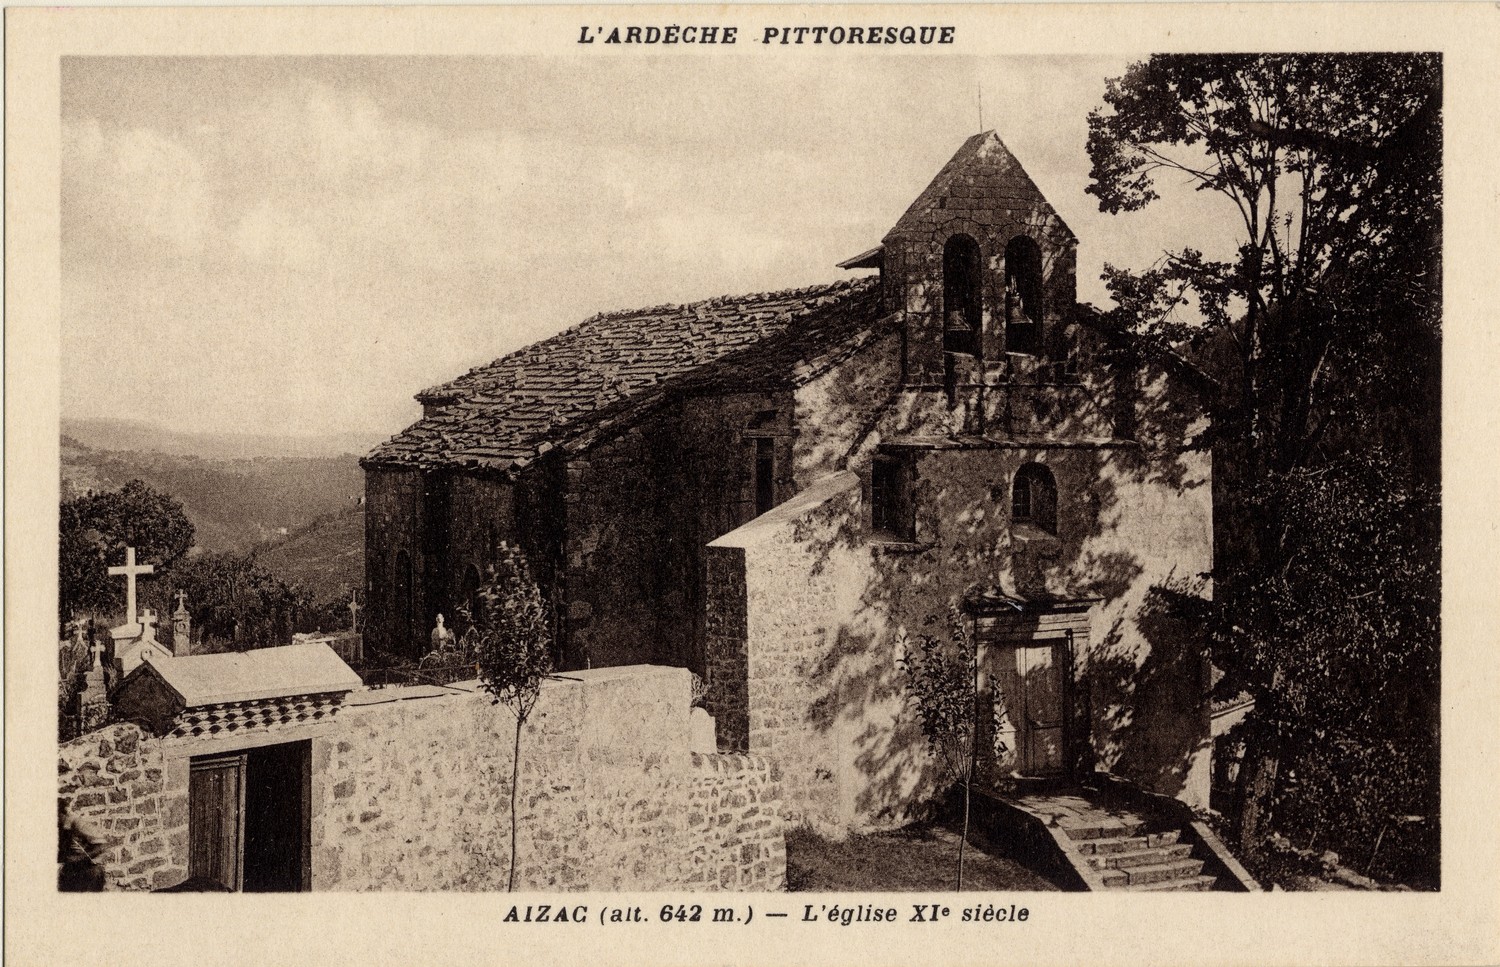 Aizac (alt. 642 m. Ardèche) : L'église XIe siècle